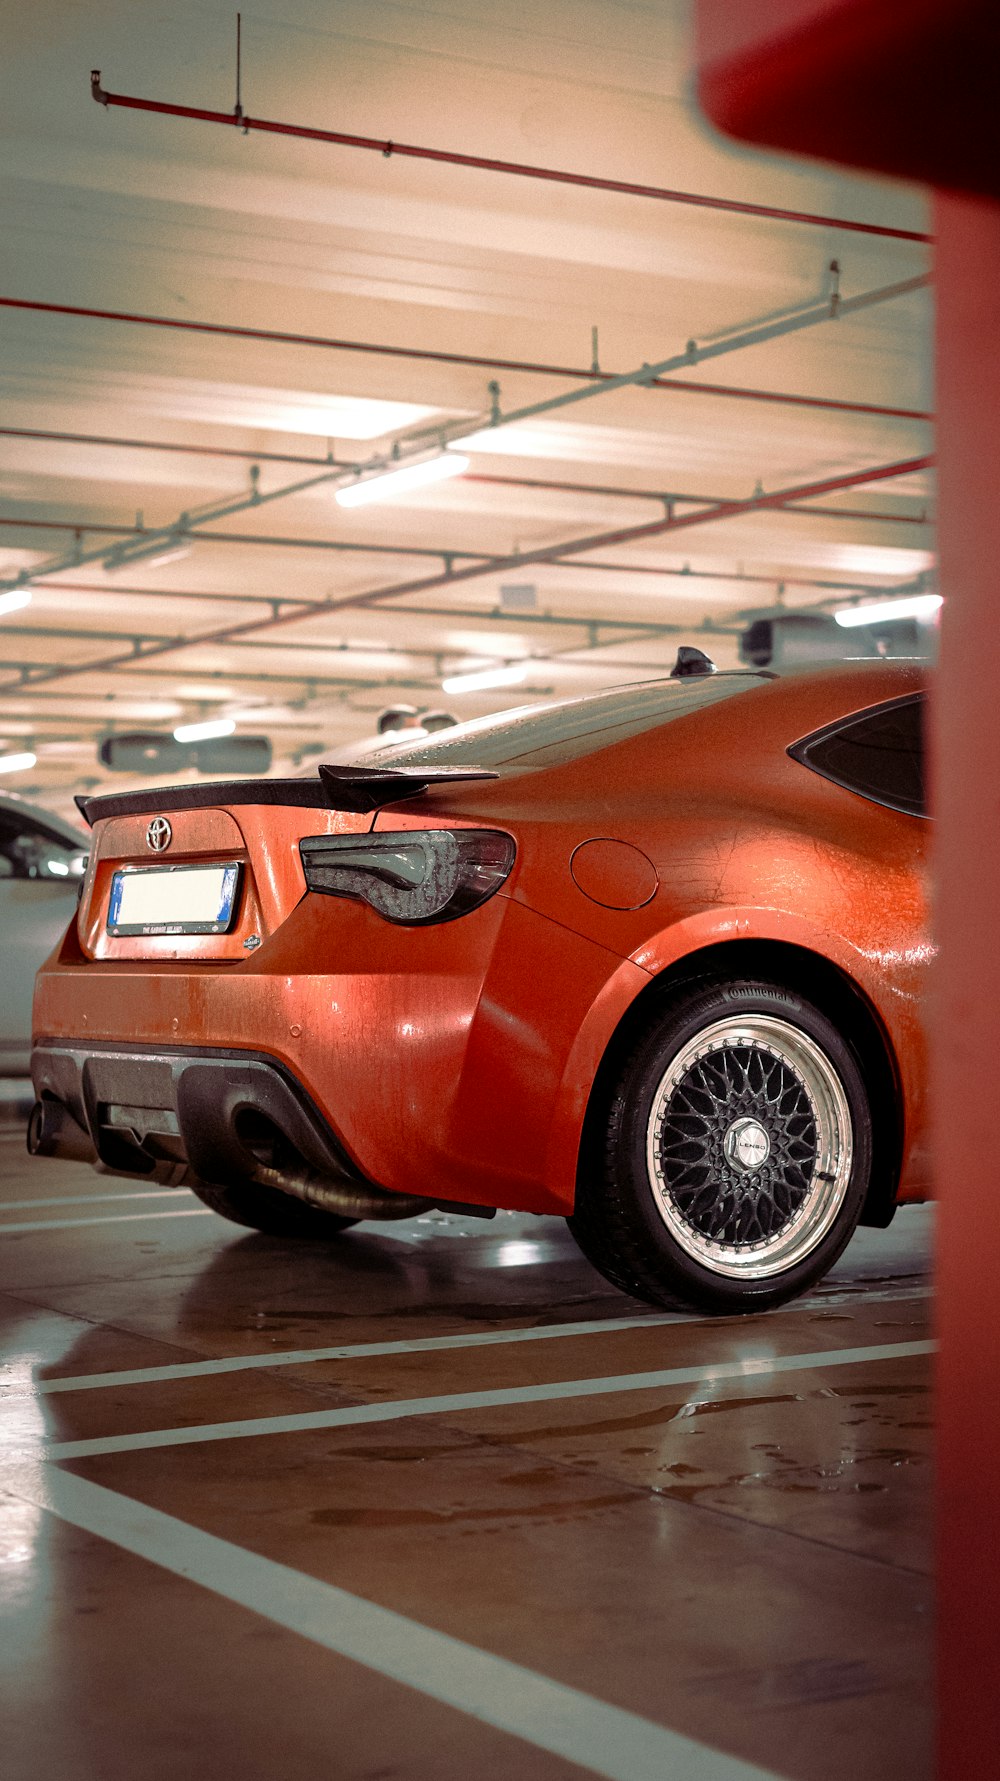 an orange sports car parked in a parking garage